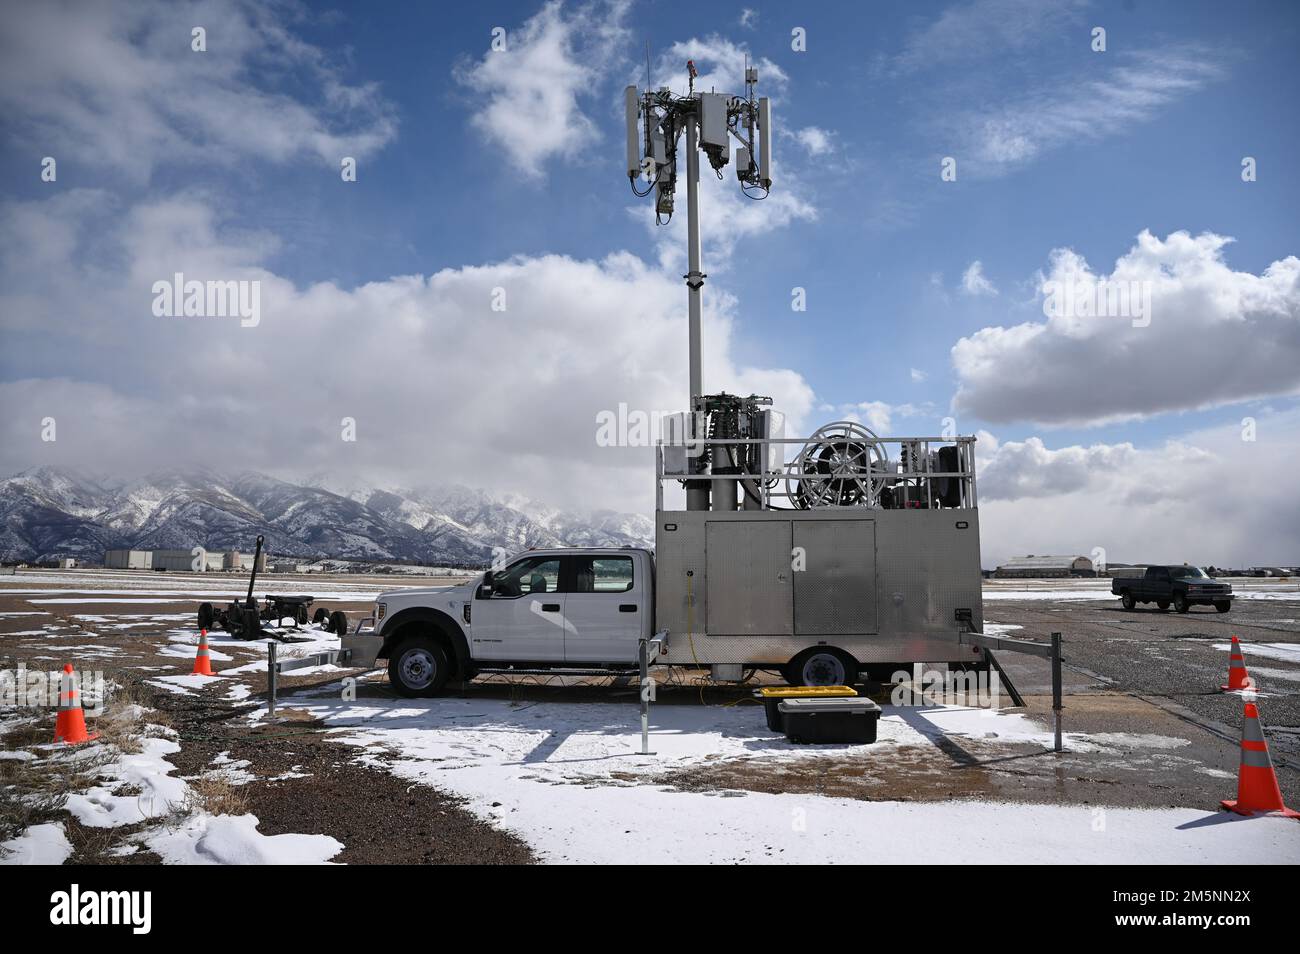 Una stazione di prova mobile 5G si trova sulla linea di volo alla base dell'aeronautica militare di Hill, Utah, 25 febbraio 2022. La stazione di prova mobile è stata utilizzata durante una serie di 5G test avionici come parte di una dimostrazione per implementare le tecnologie 5G senza compromettere la sicurezza degli aerei militari e civili. Foto Stock